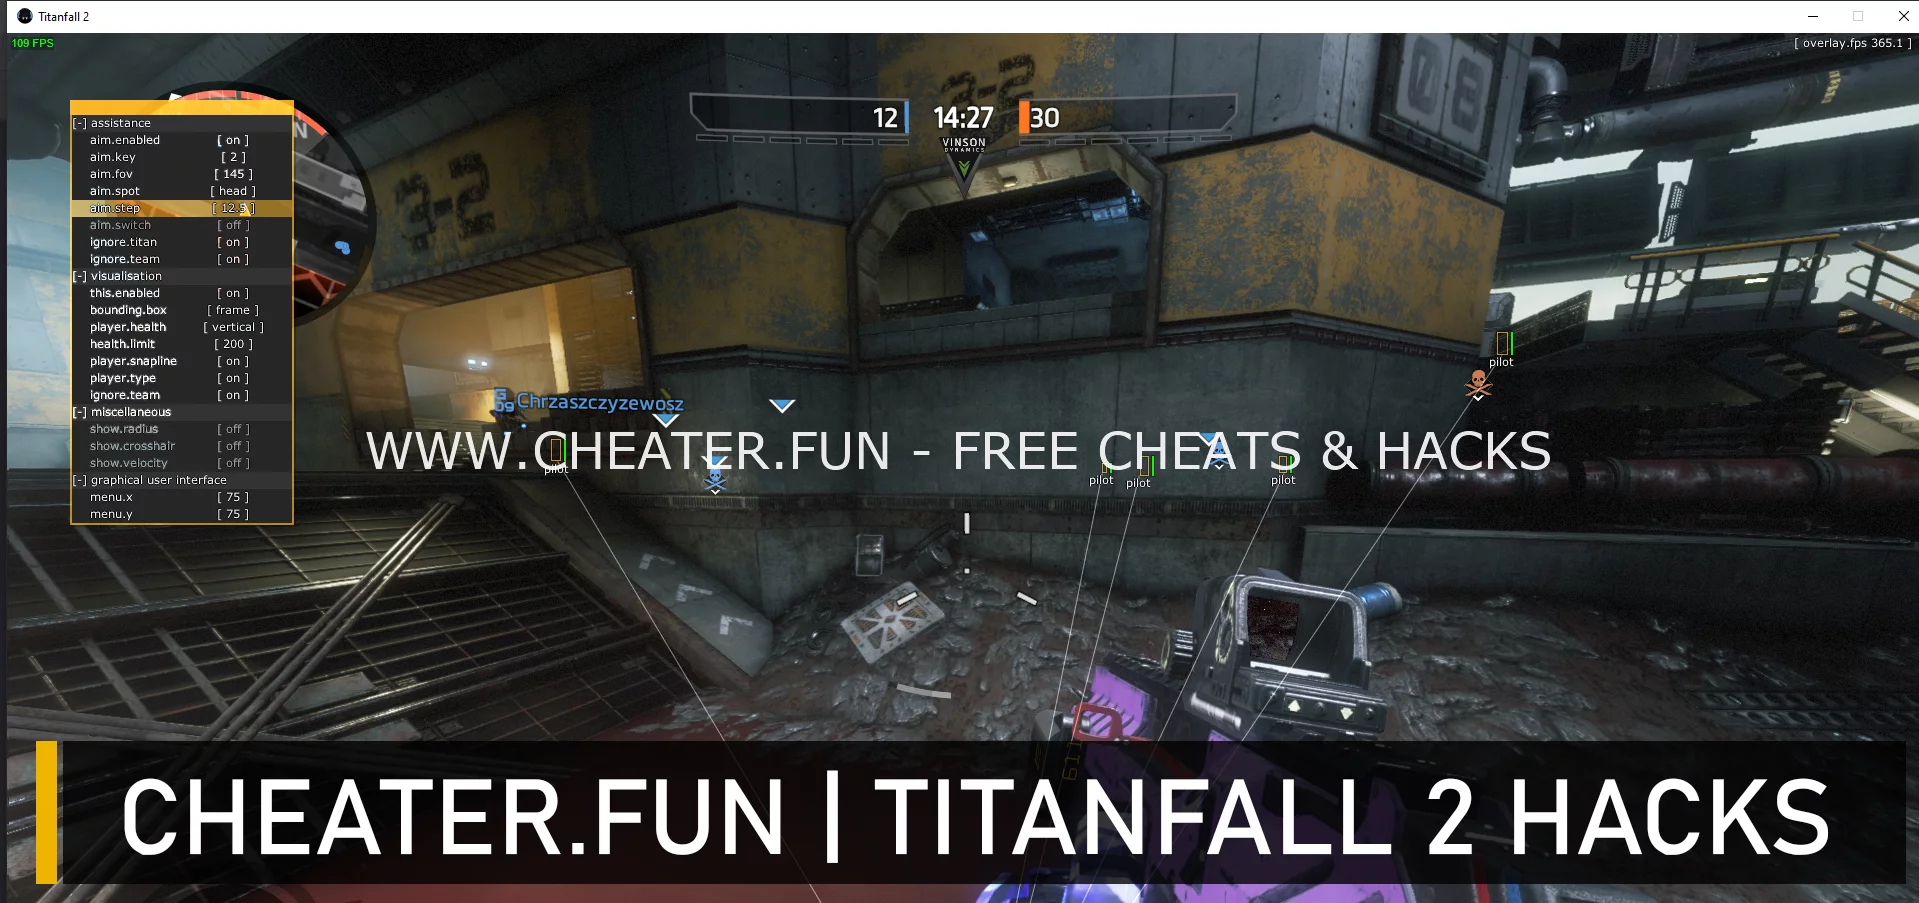 Titanfall 2 Steam External cheat - Aimbot, ESP, TriggerBot